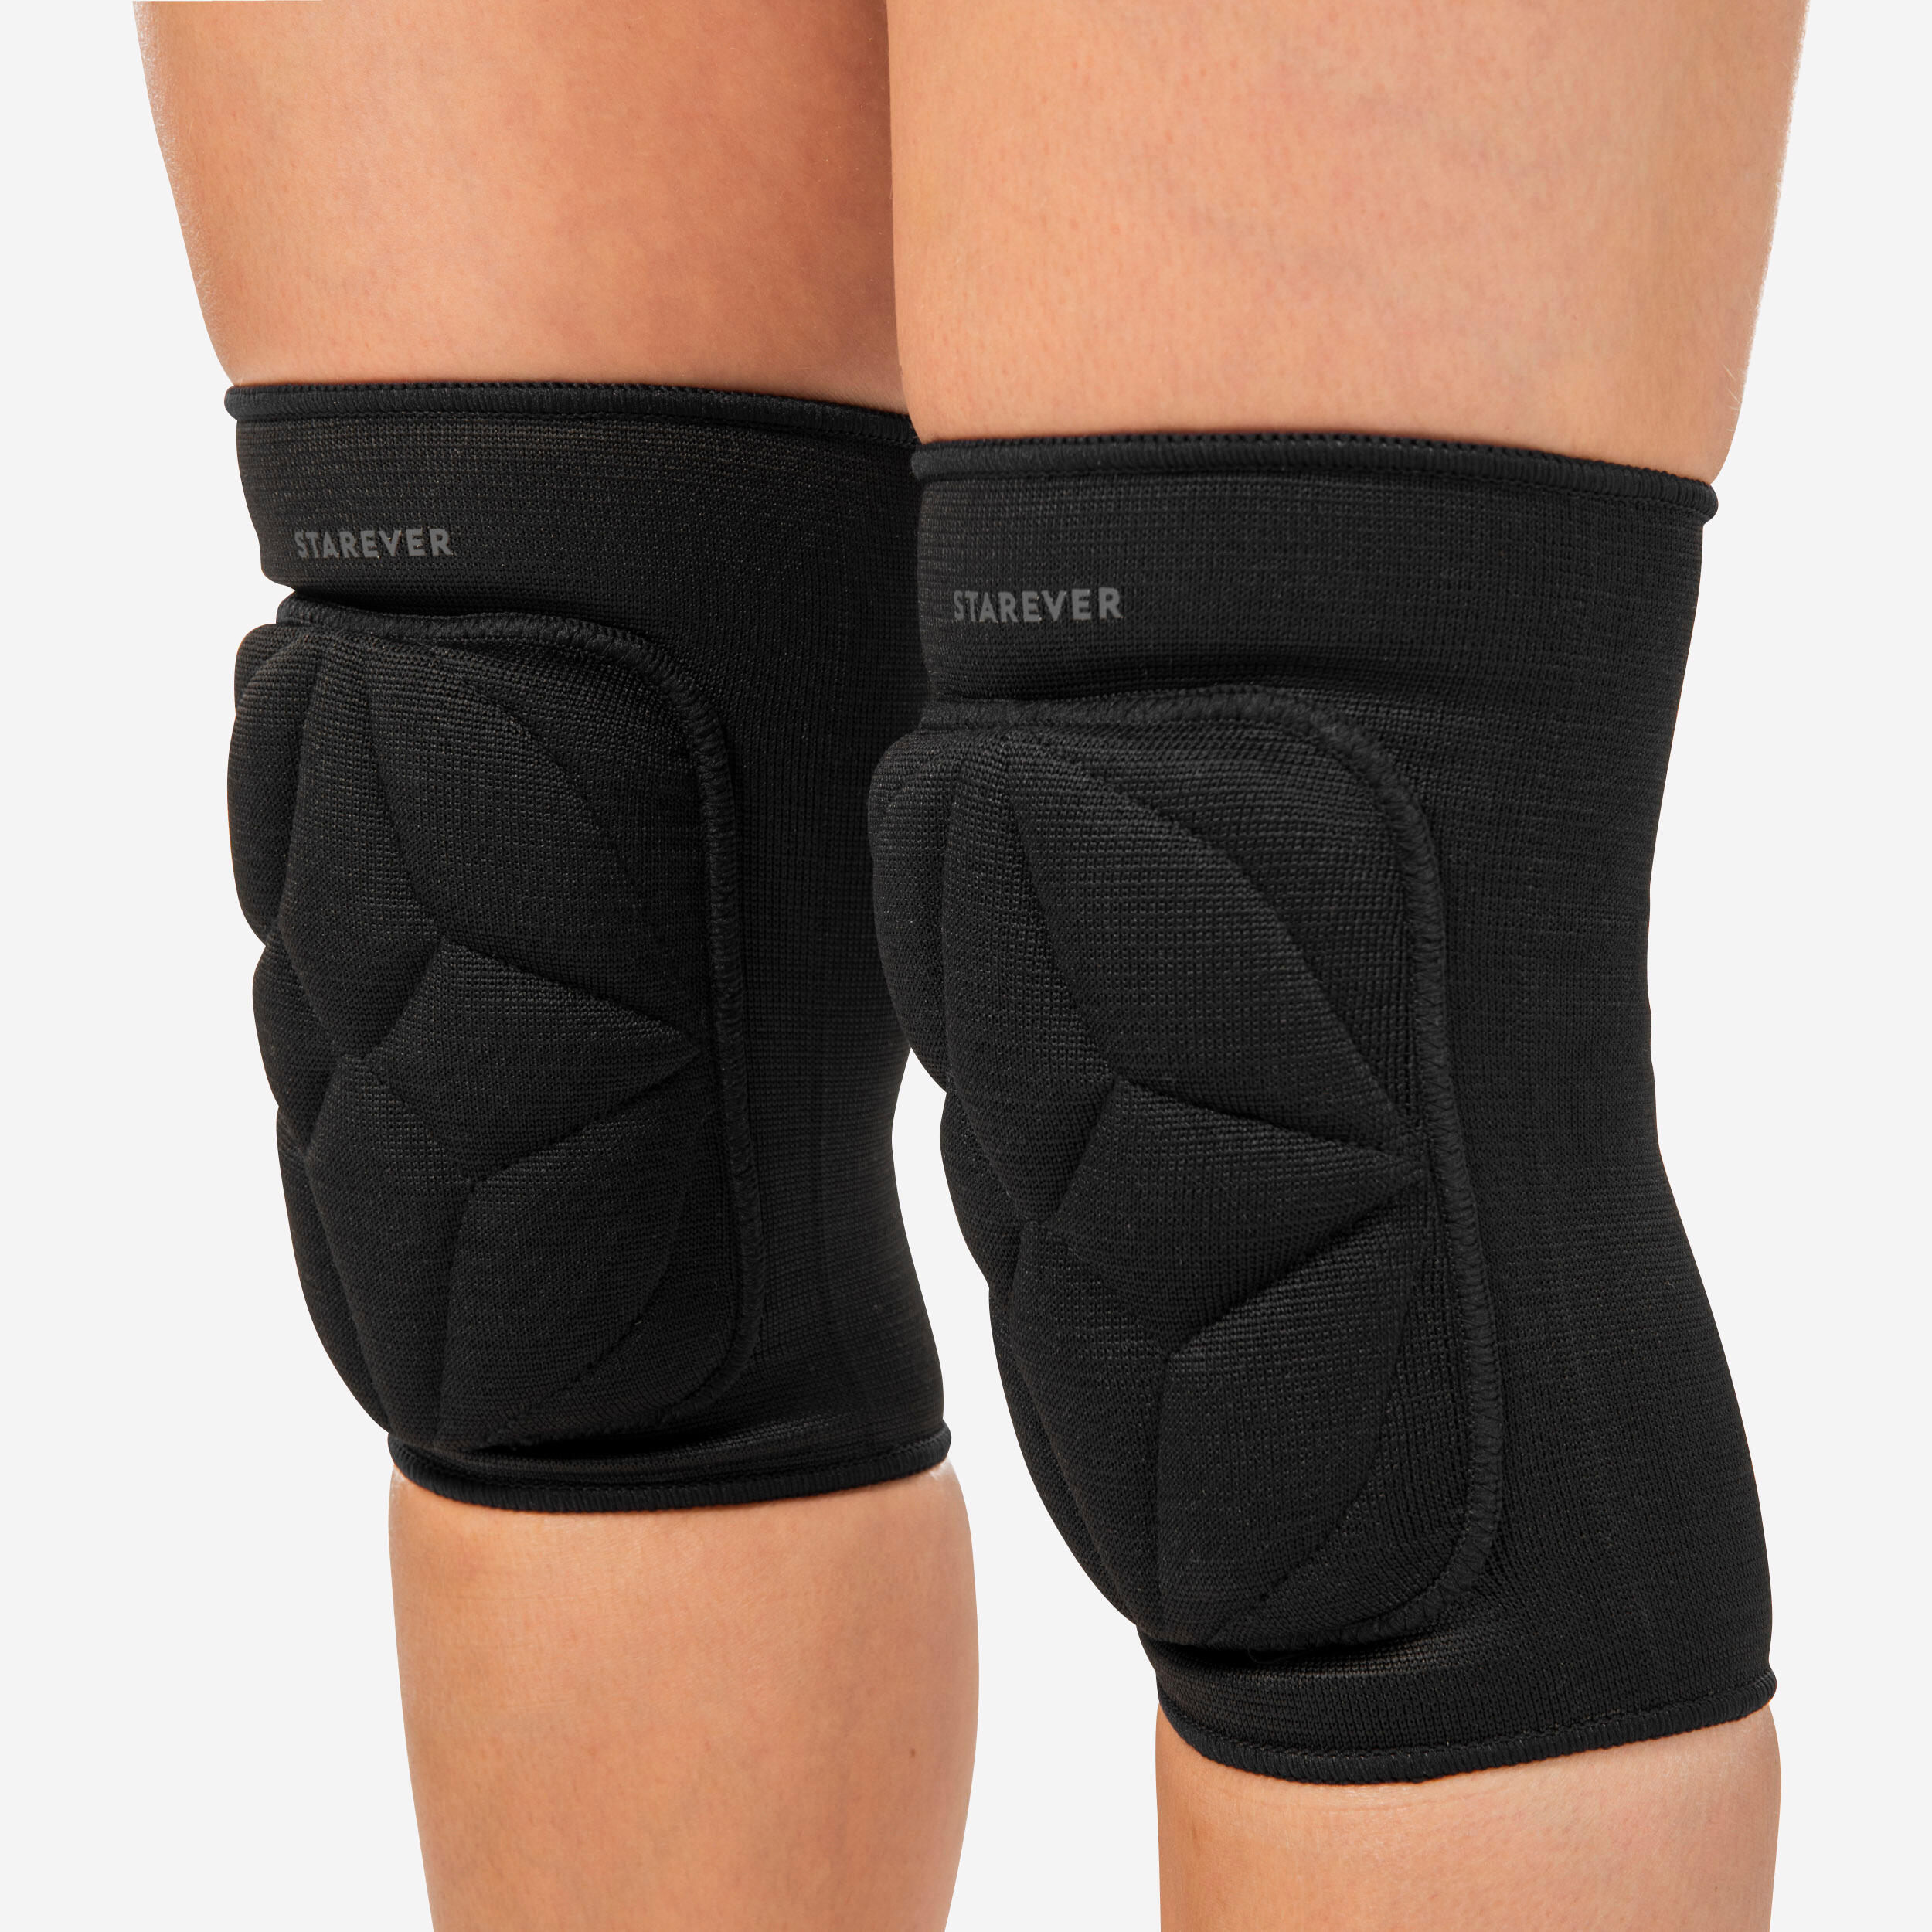 GetUSCart- 2 Pack Knee Braces Sleeves for Knee Pain Women Men